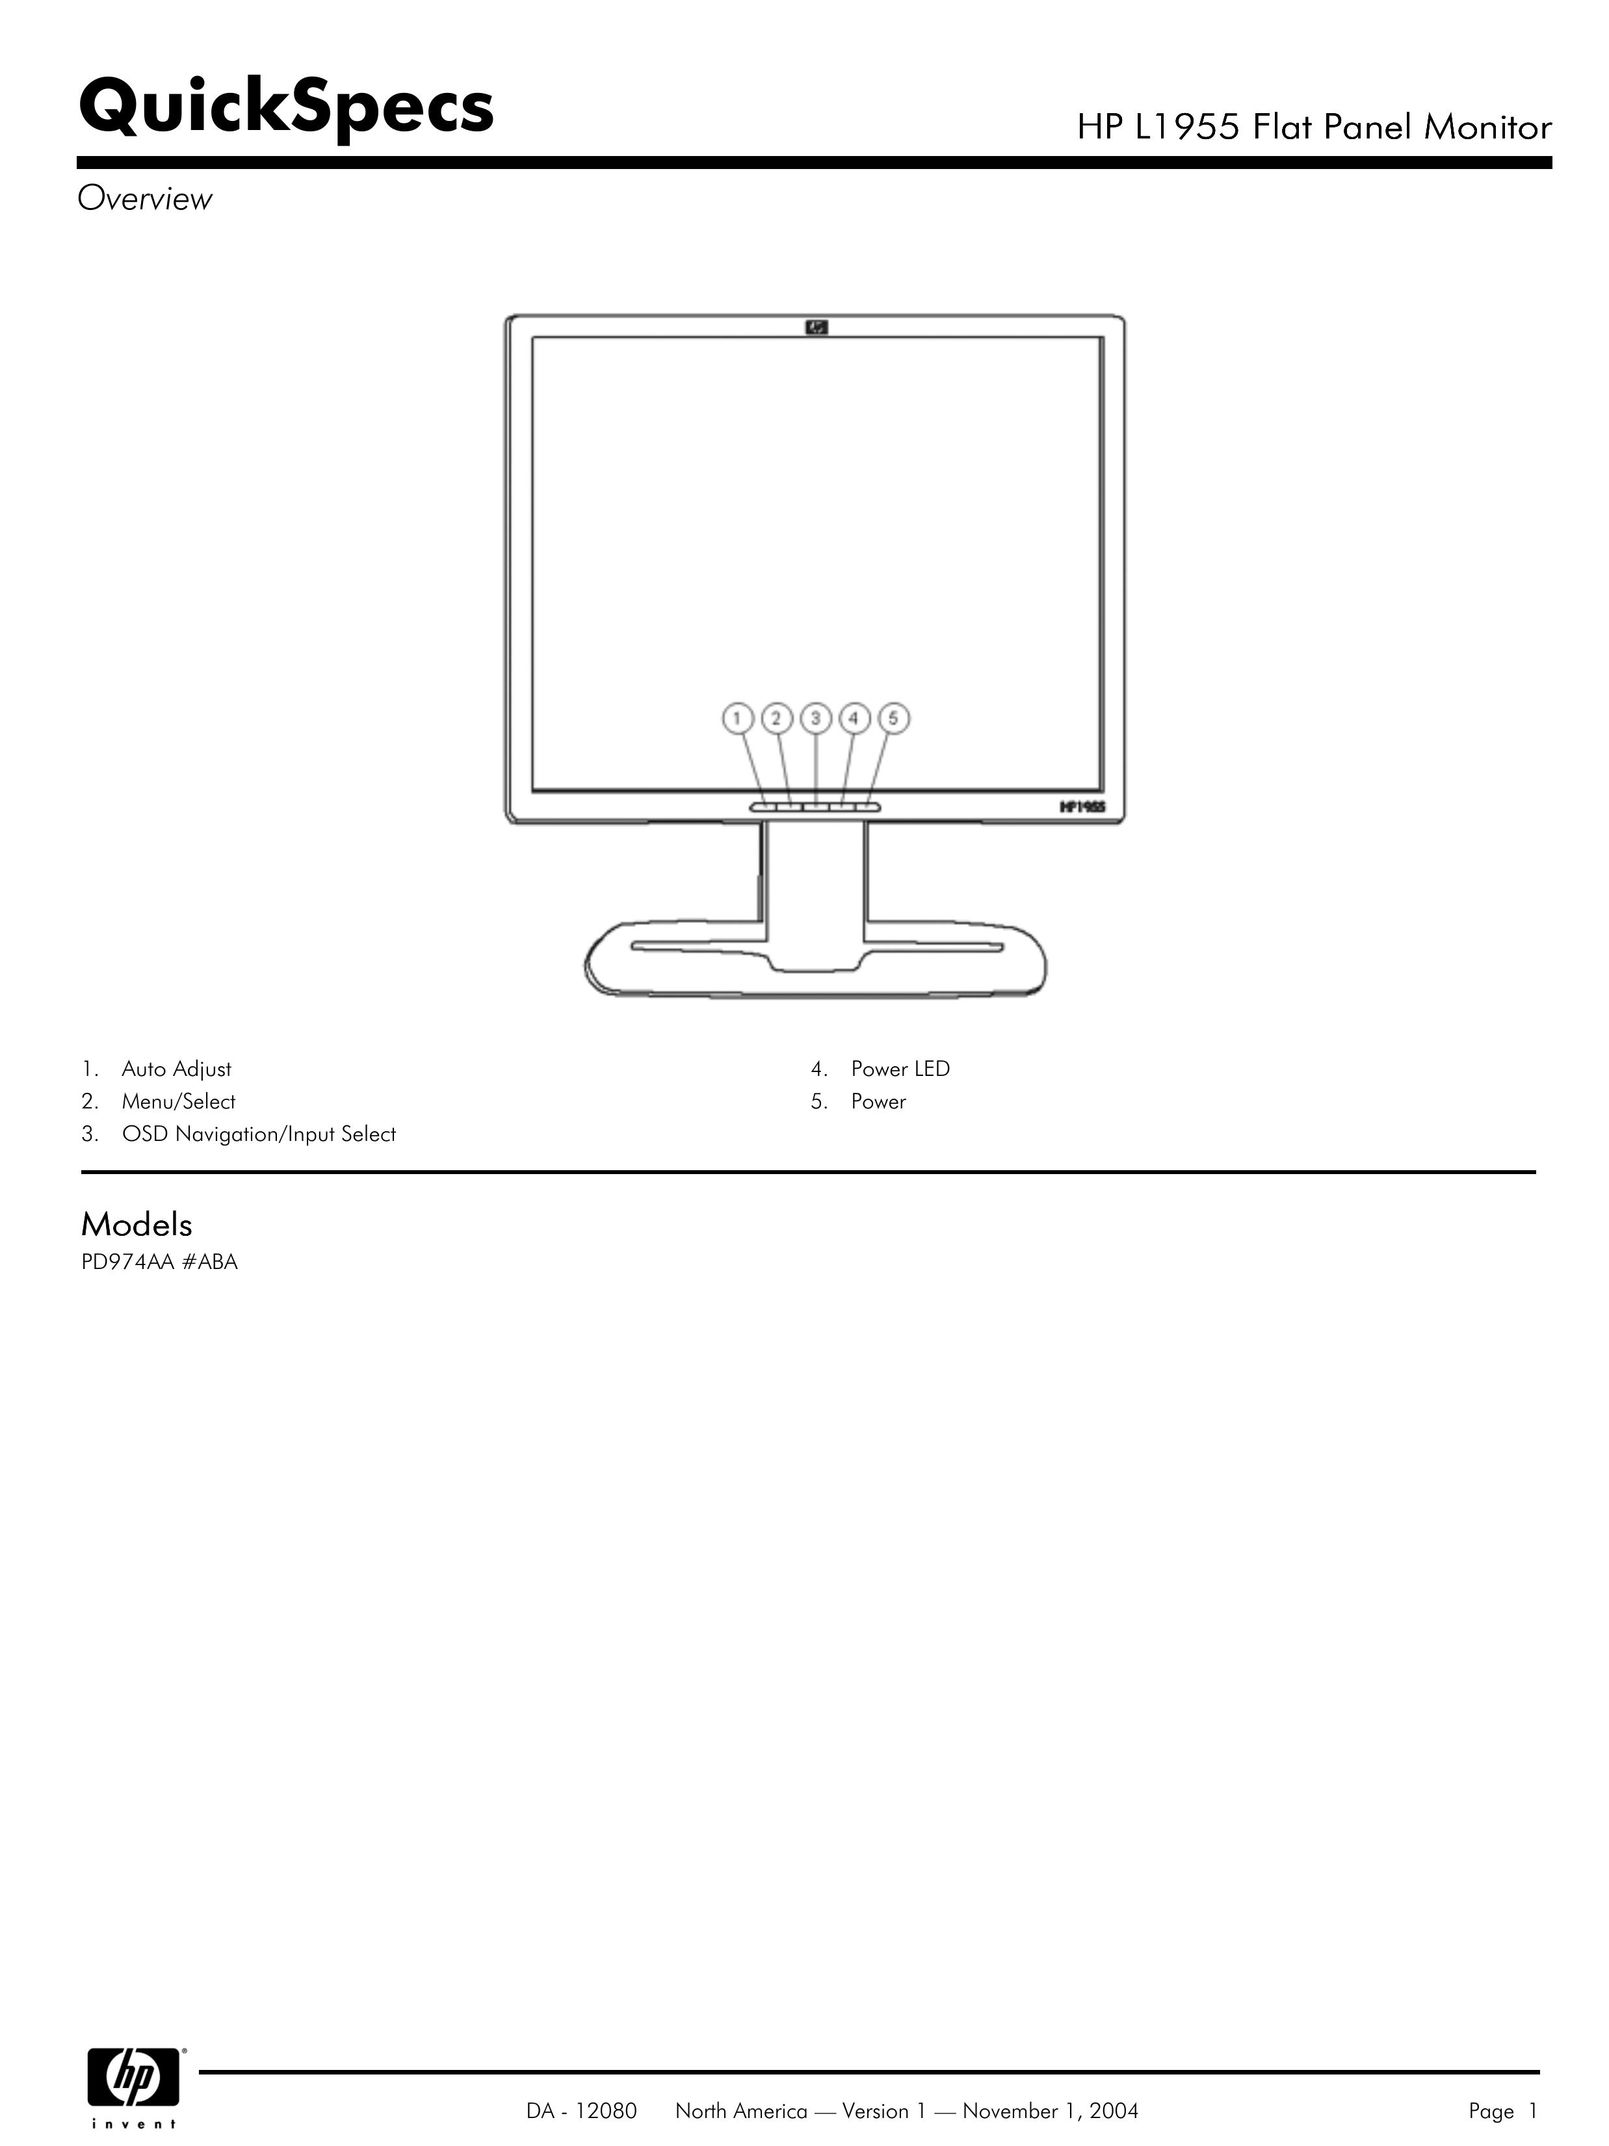 Compaq HP L1955 Switch User Manual